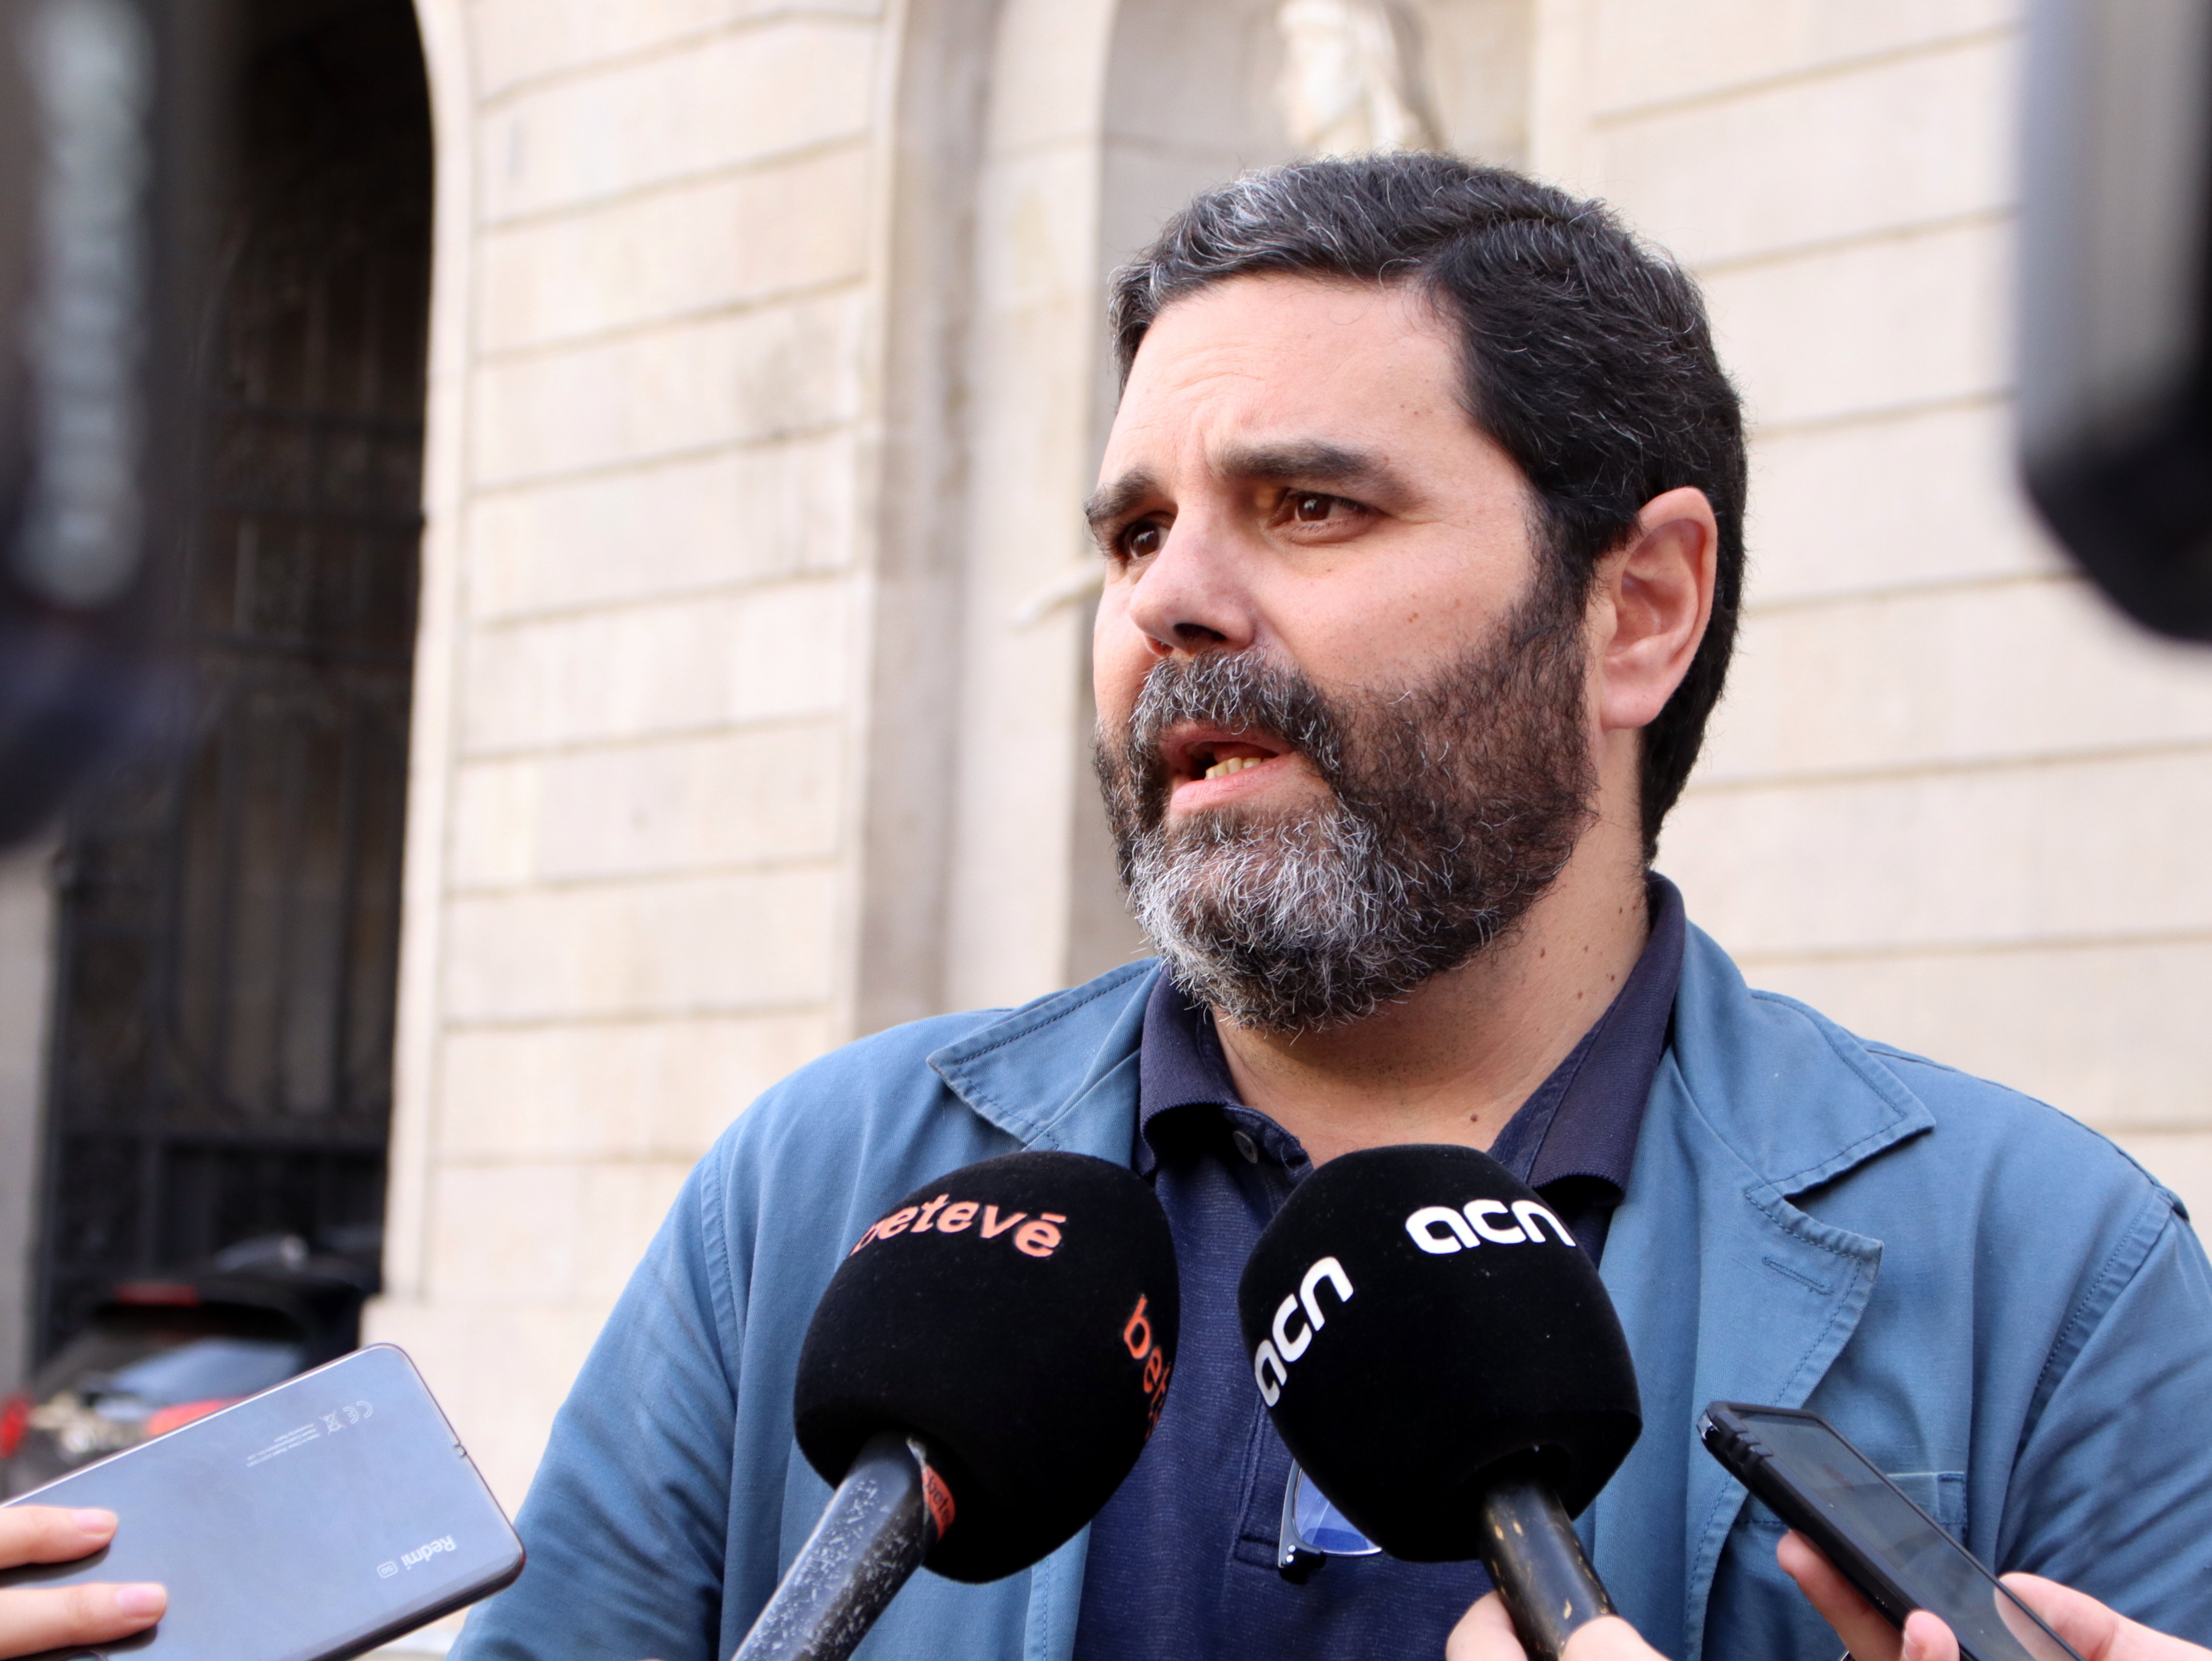 Continúa el vodevil en Ciudadanos Barcelona, ahora el partido rompe relaciones con Paco Sierra